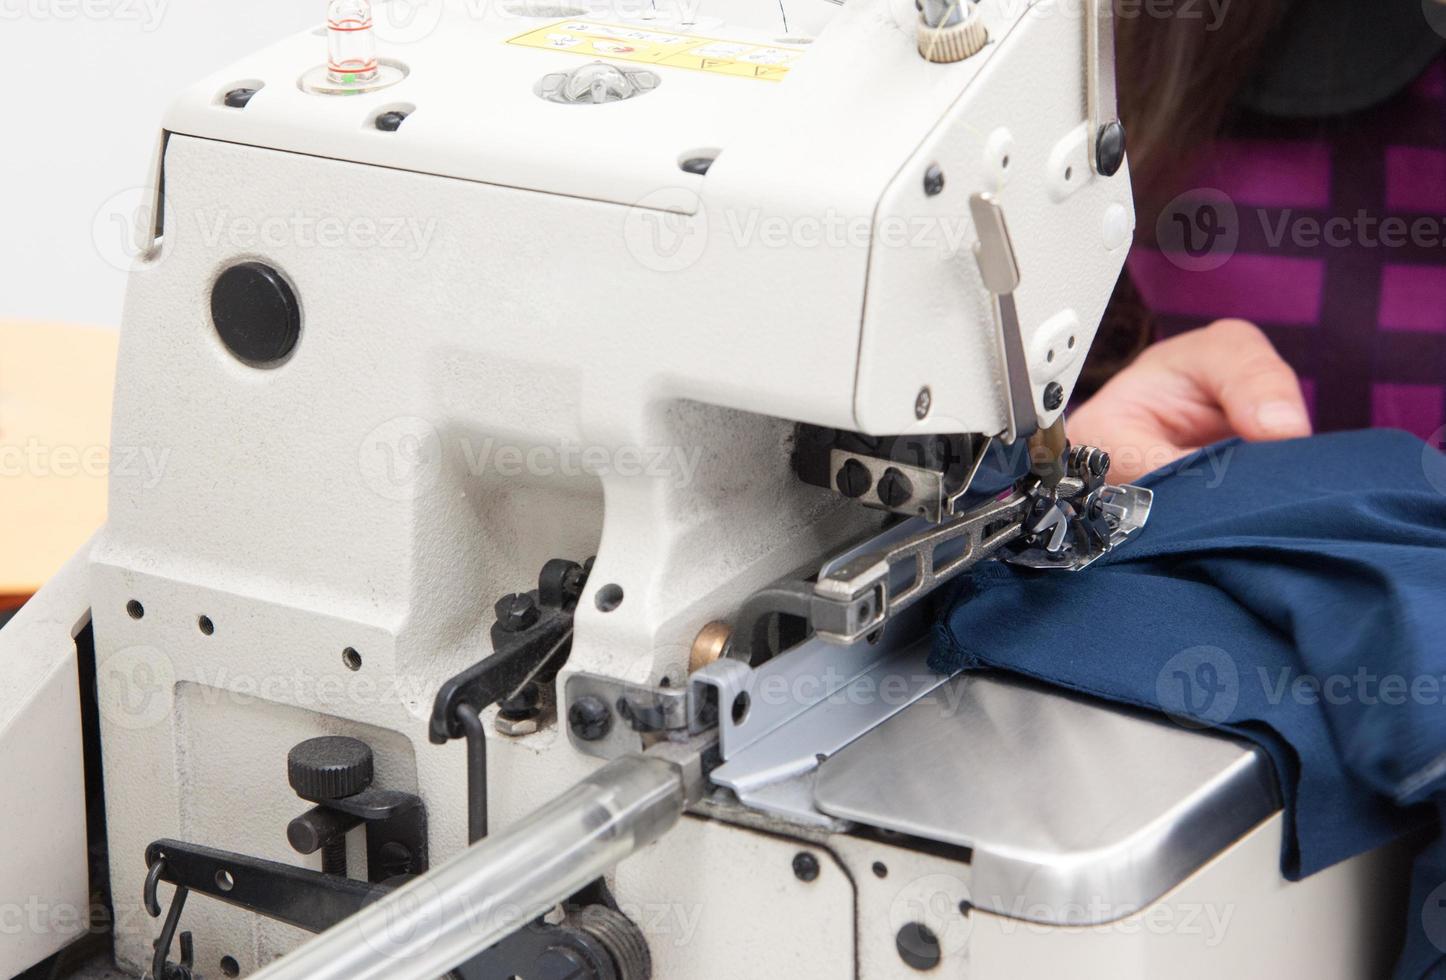 costurera en la máquina cose ropa en una fábrica de prendas de vestir foto